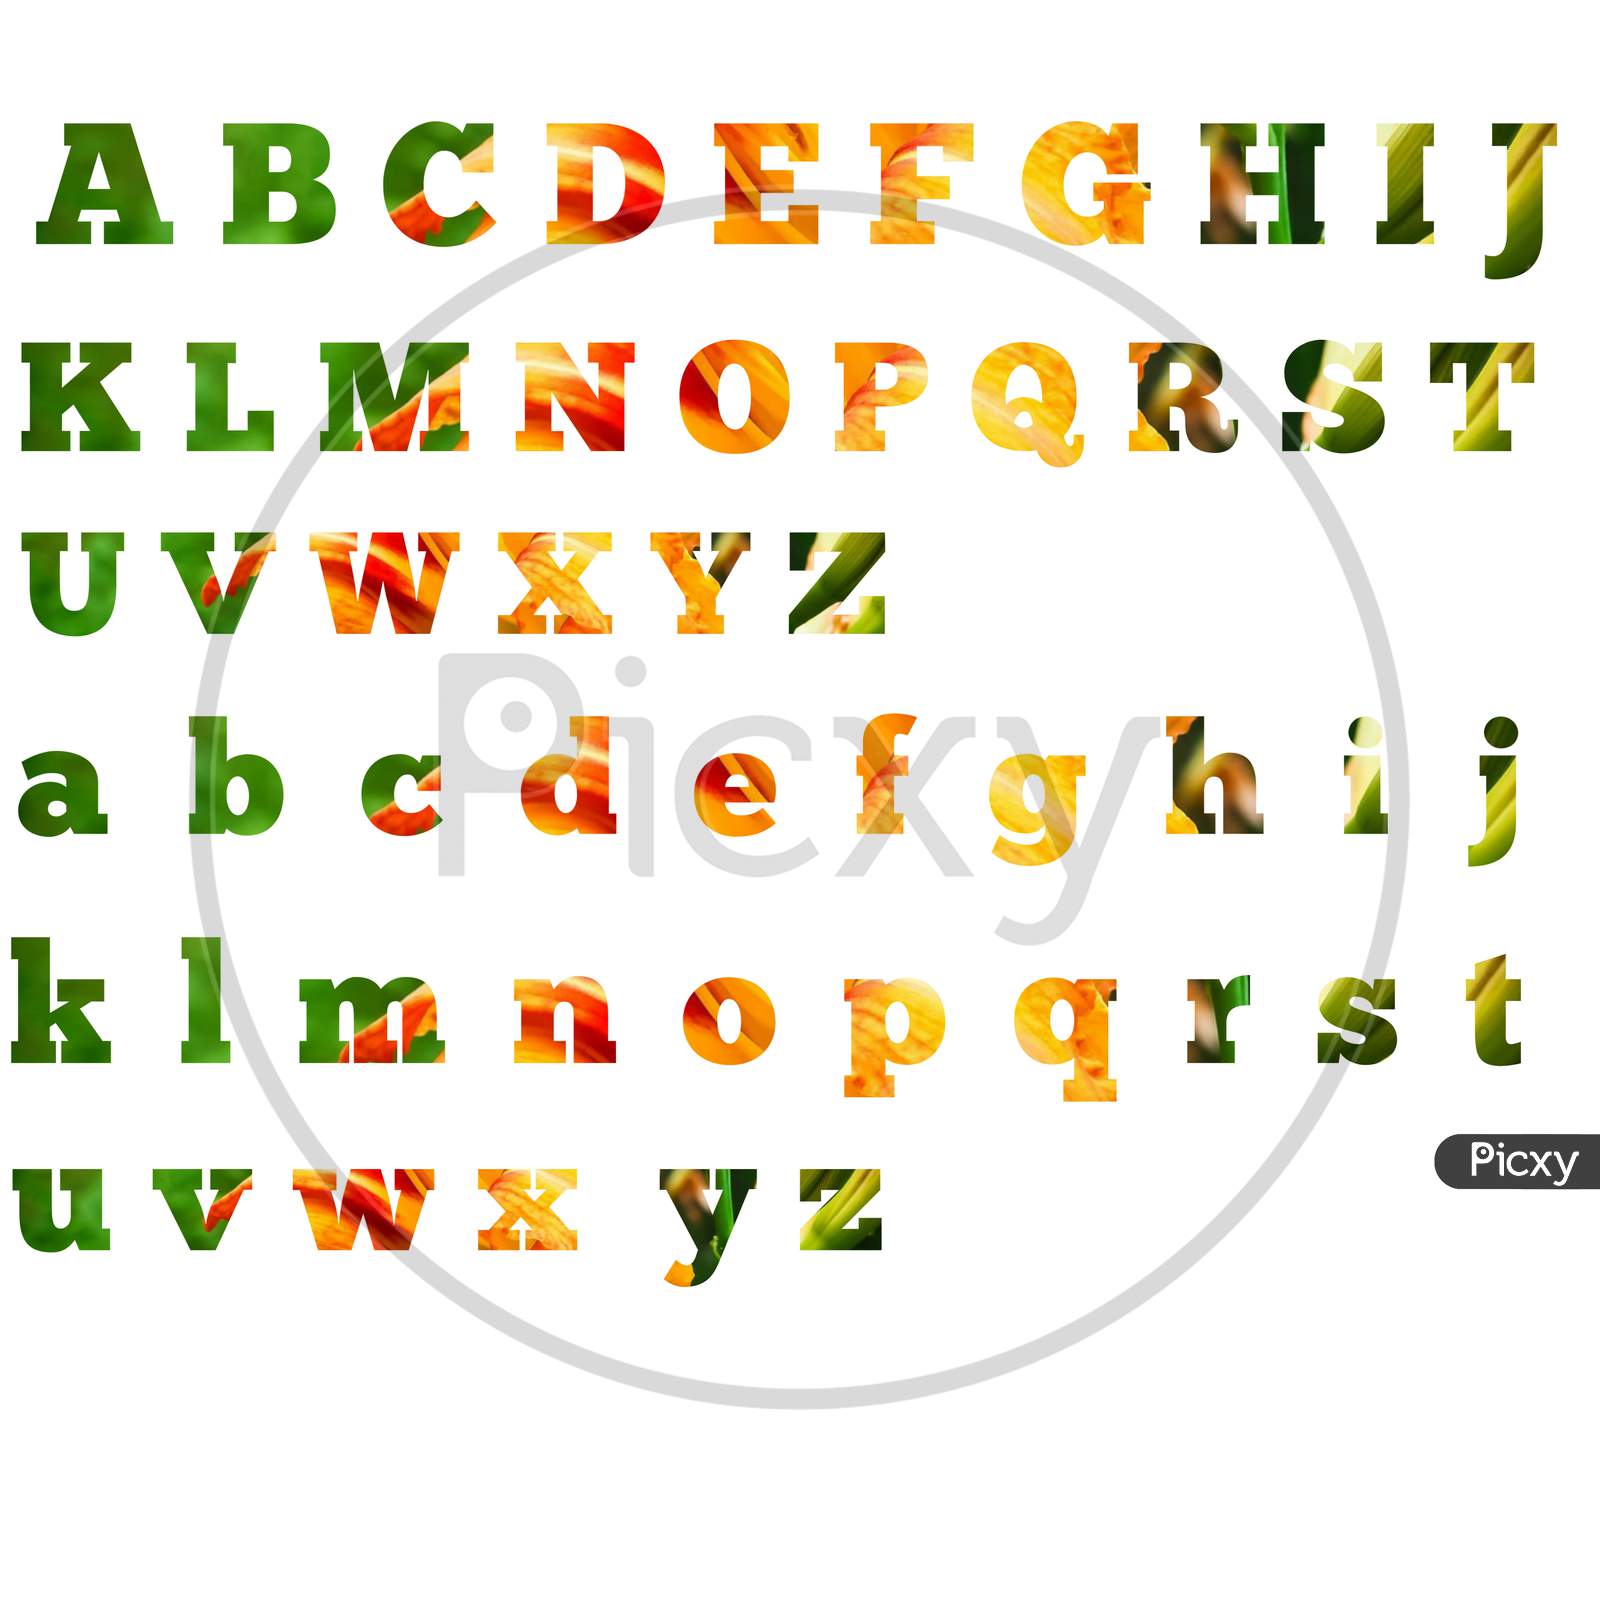 alphabet letters designs